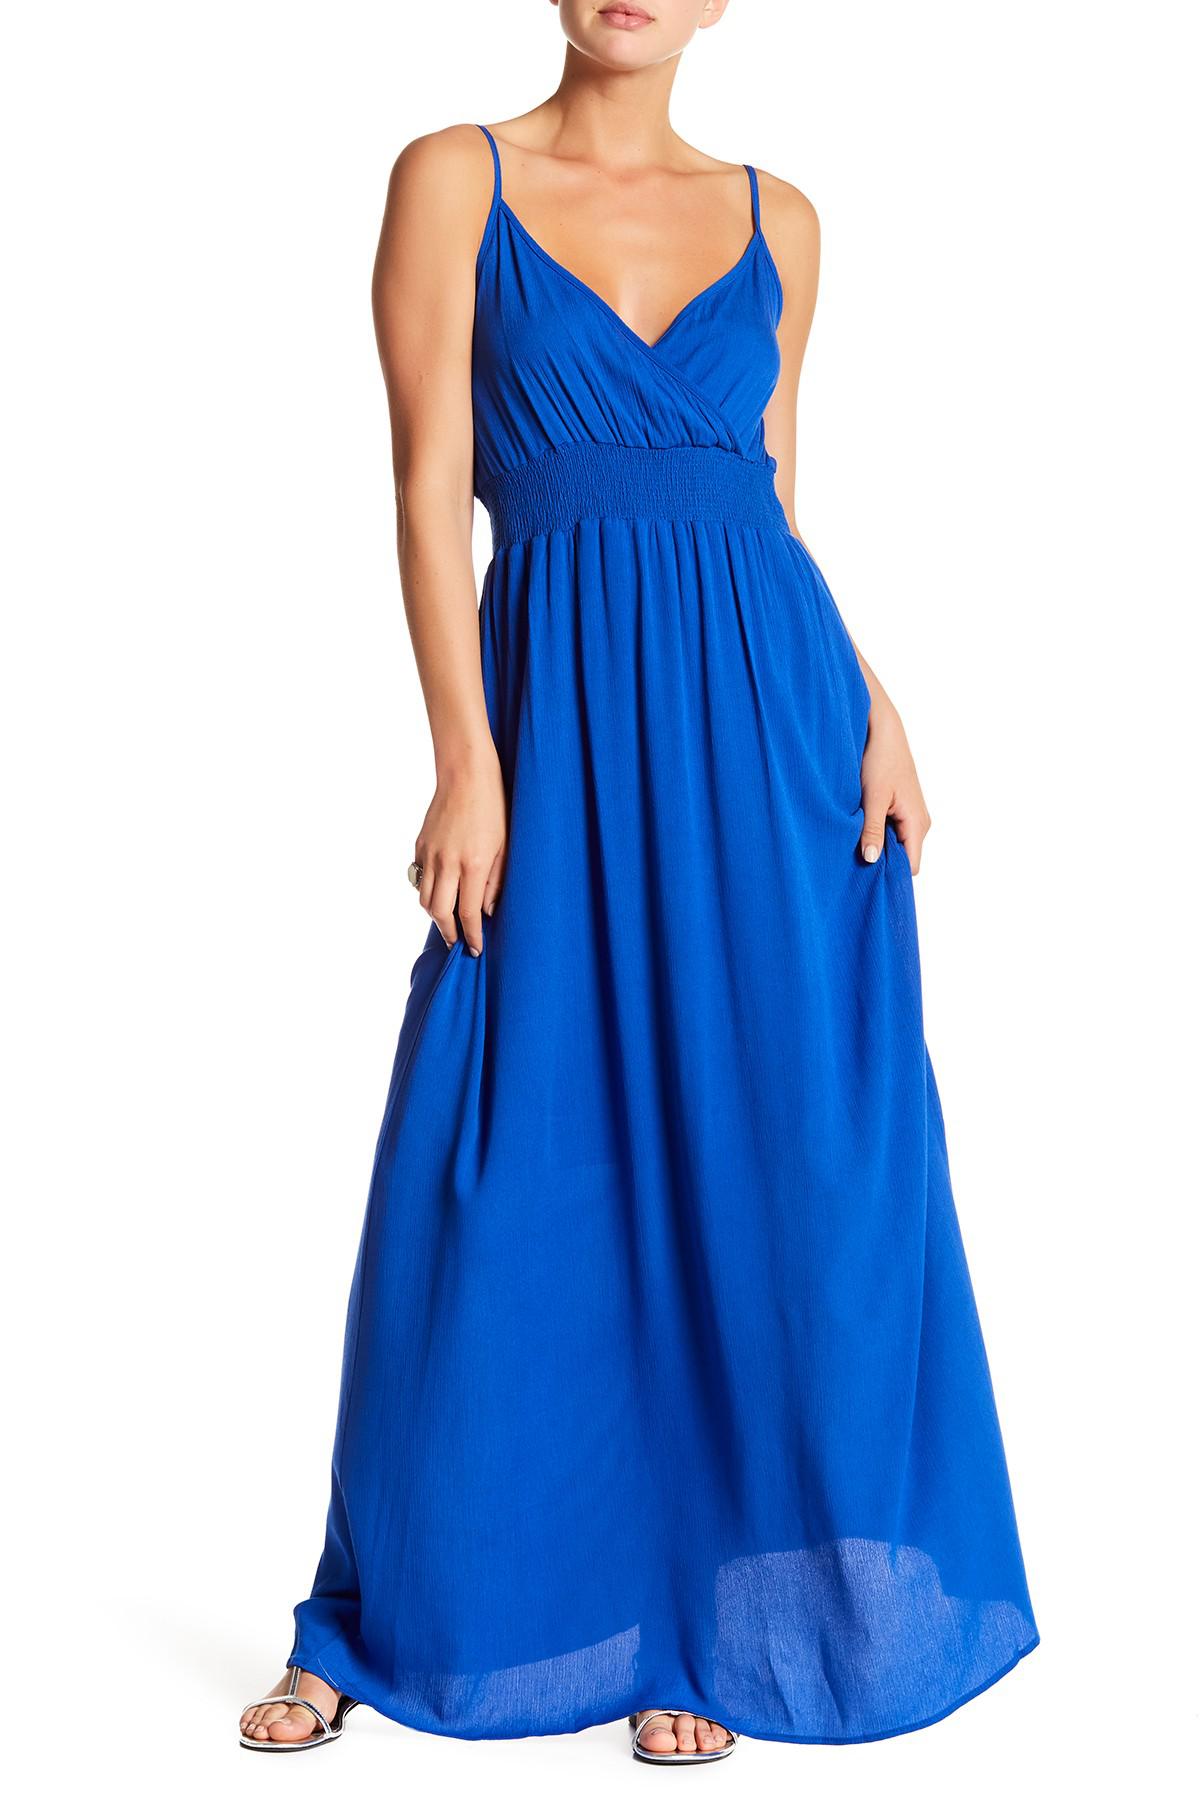 Lyst - West Kei Gauze Maxi Dress in Blue